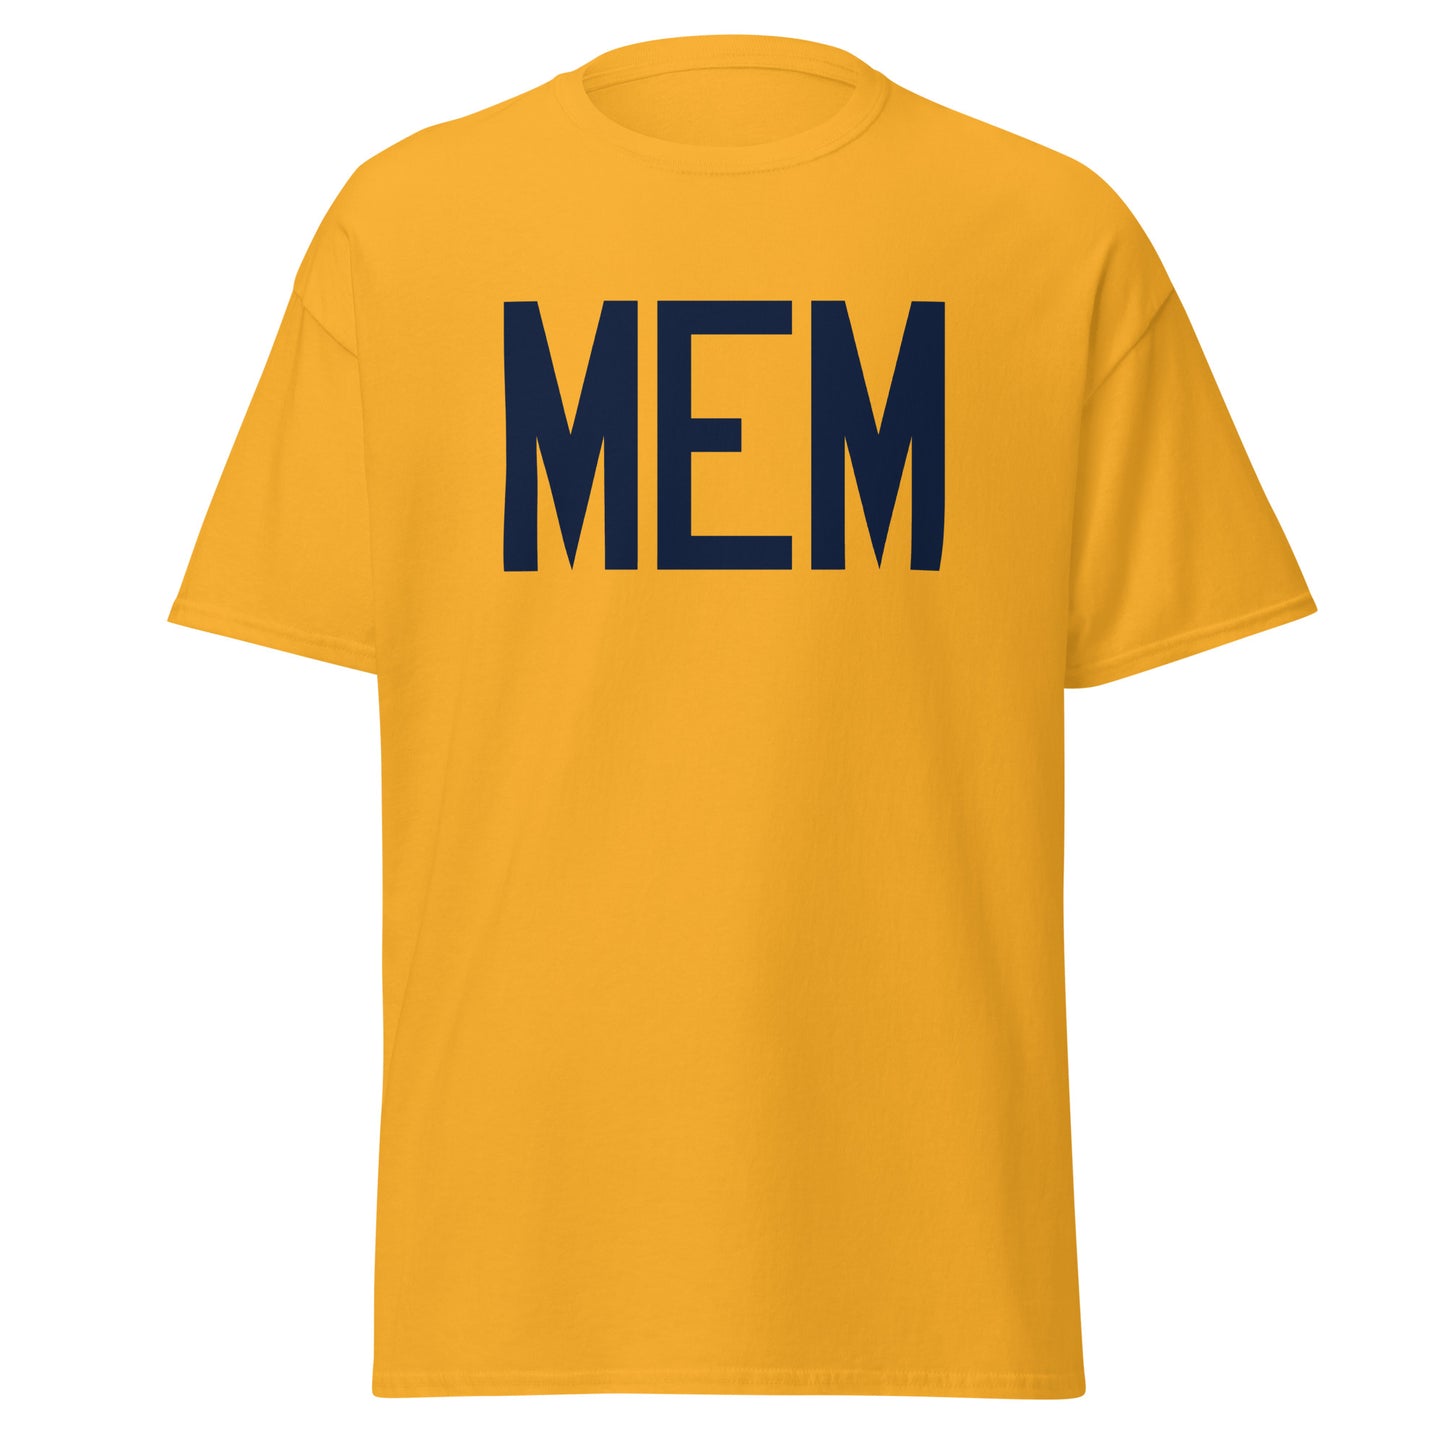 Aviation-Theme Men's T-Shirt - Navy Blue Graphic • MEM Memphis • YHM Designs - Image 05